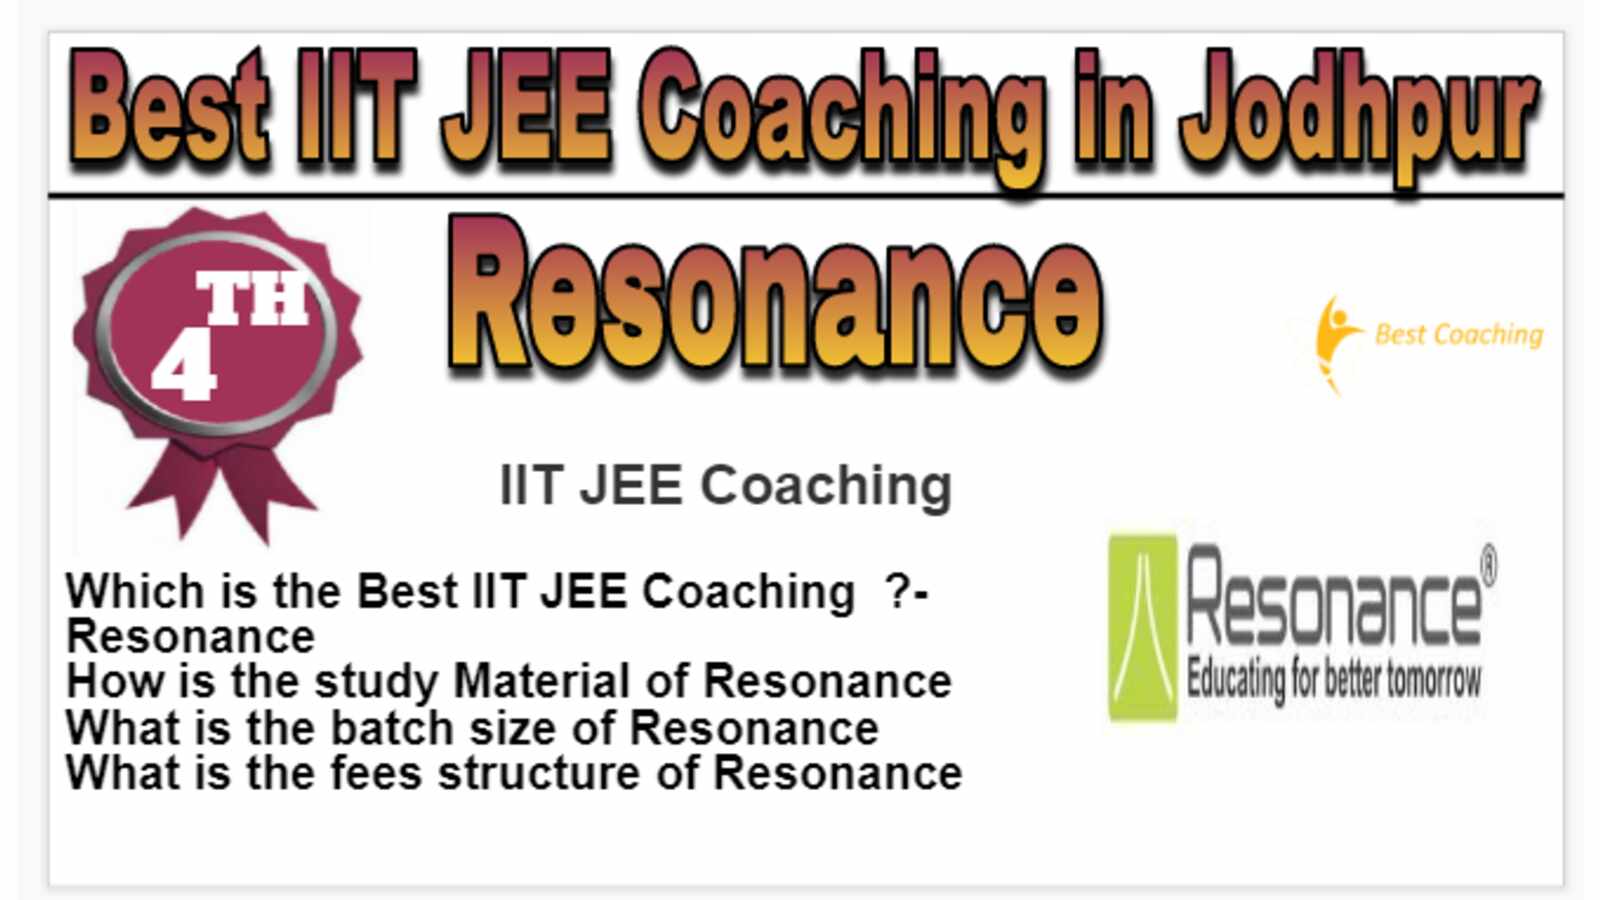 Rank 4 Best IIT JEE Coaching in Jodhpur